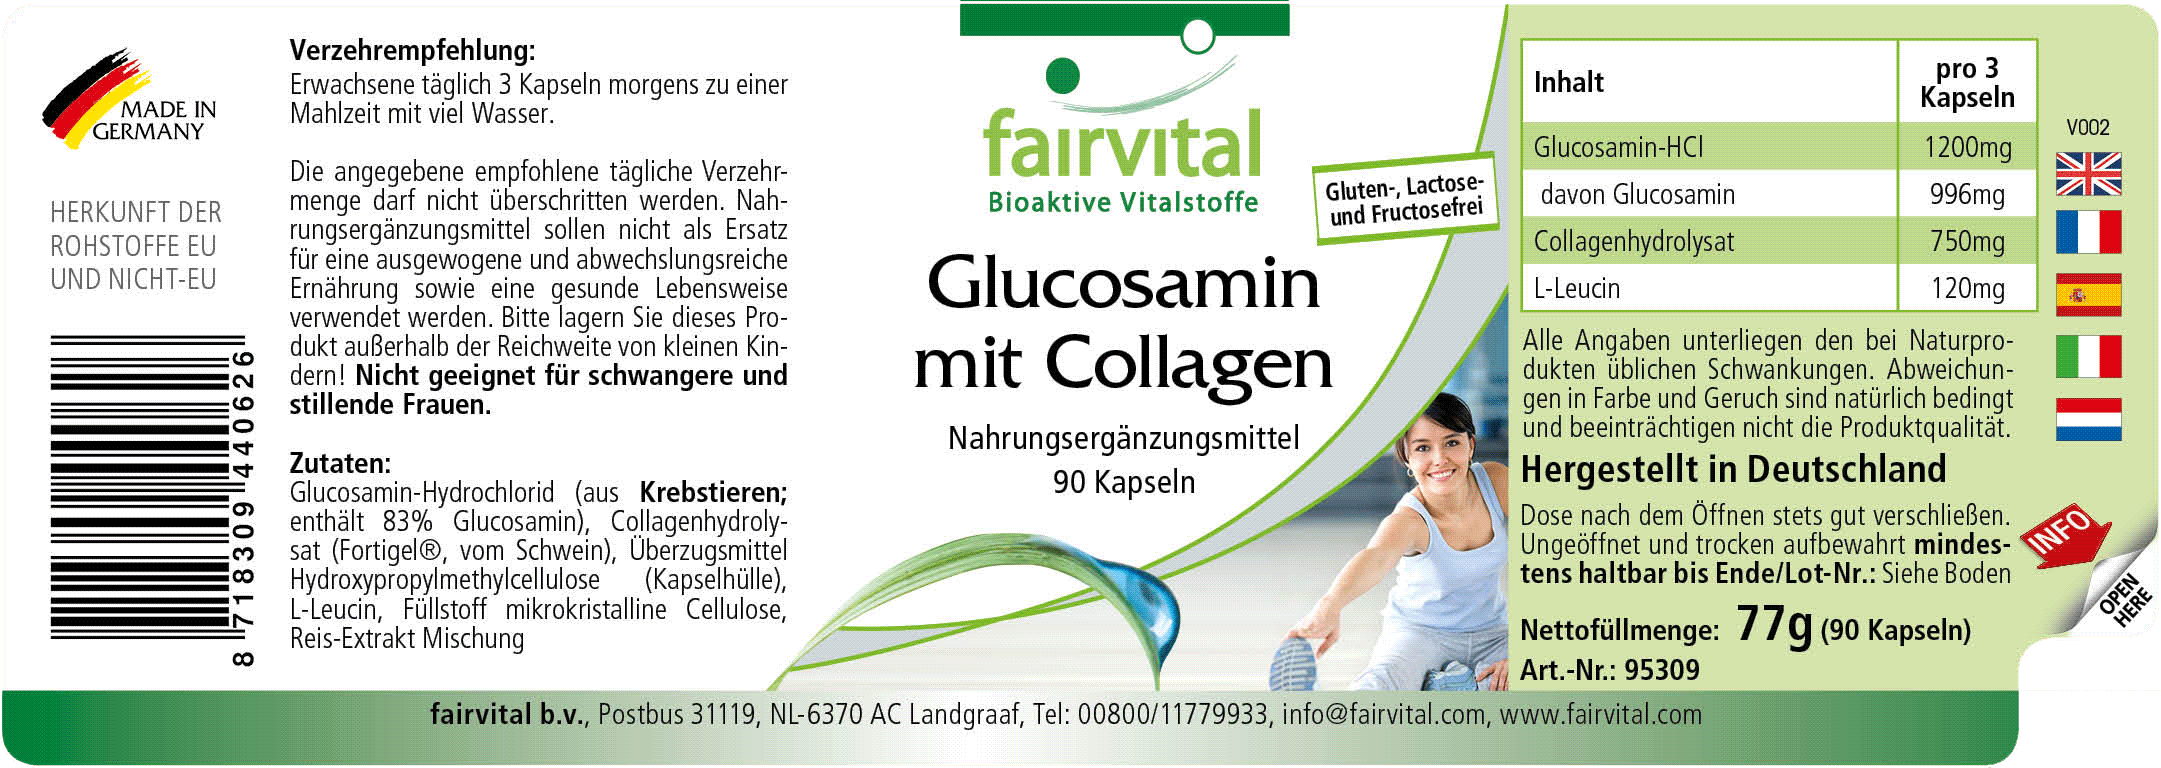 Glucosamin mit Collagen - 90 Kapseln - Sale- MHD 04/25